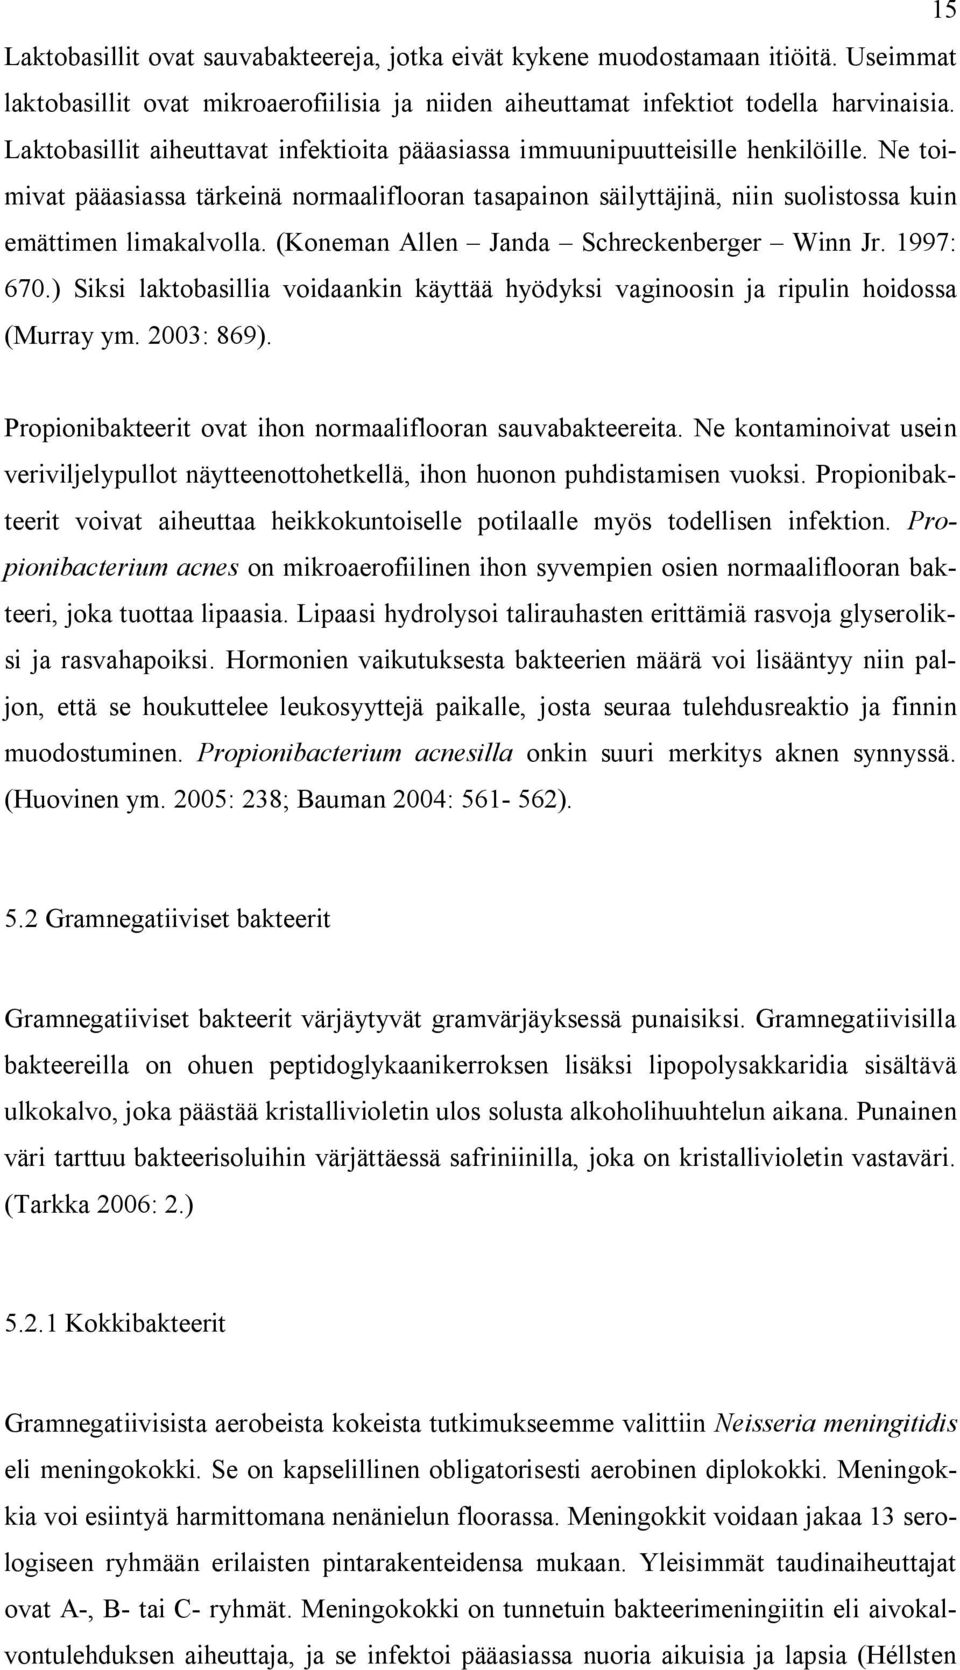 (Koneman Allen Janda Schreckenberger Winn Jr. 1997: 670.) Siksi laktobasillia voidaankin käyttää hyödyksi vaginoosin ja ripulin hoidossa (Murray ym. 2003: 869).